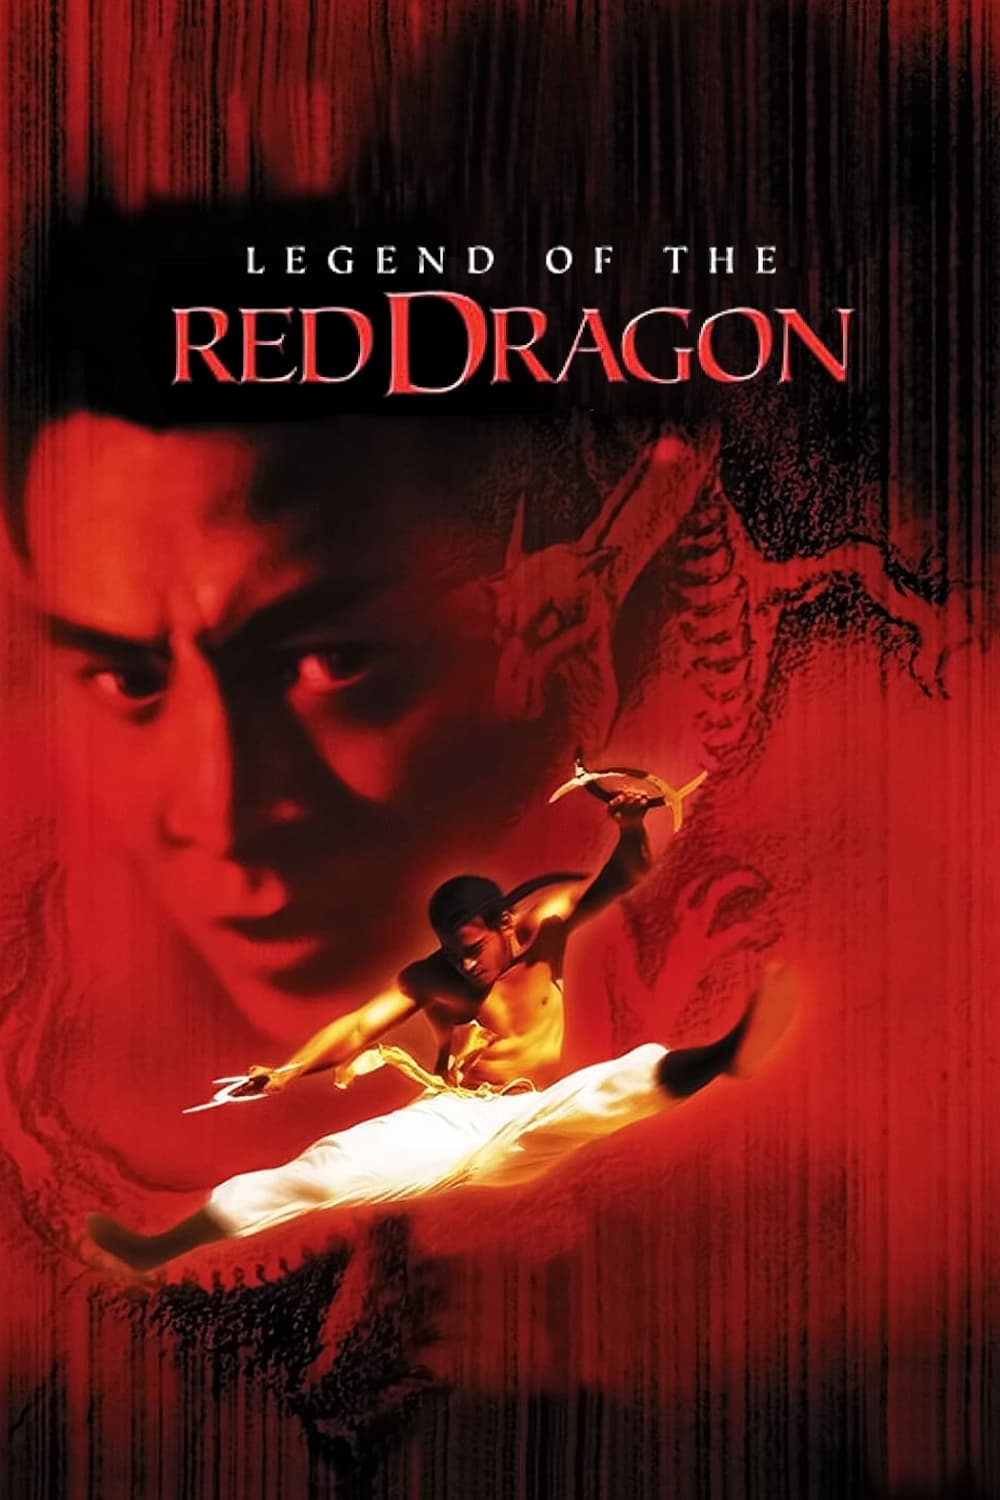 La leyenda del Dragón Rojo (1994)